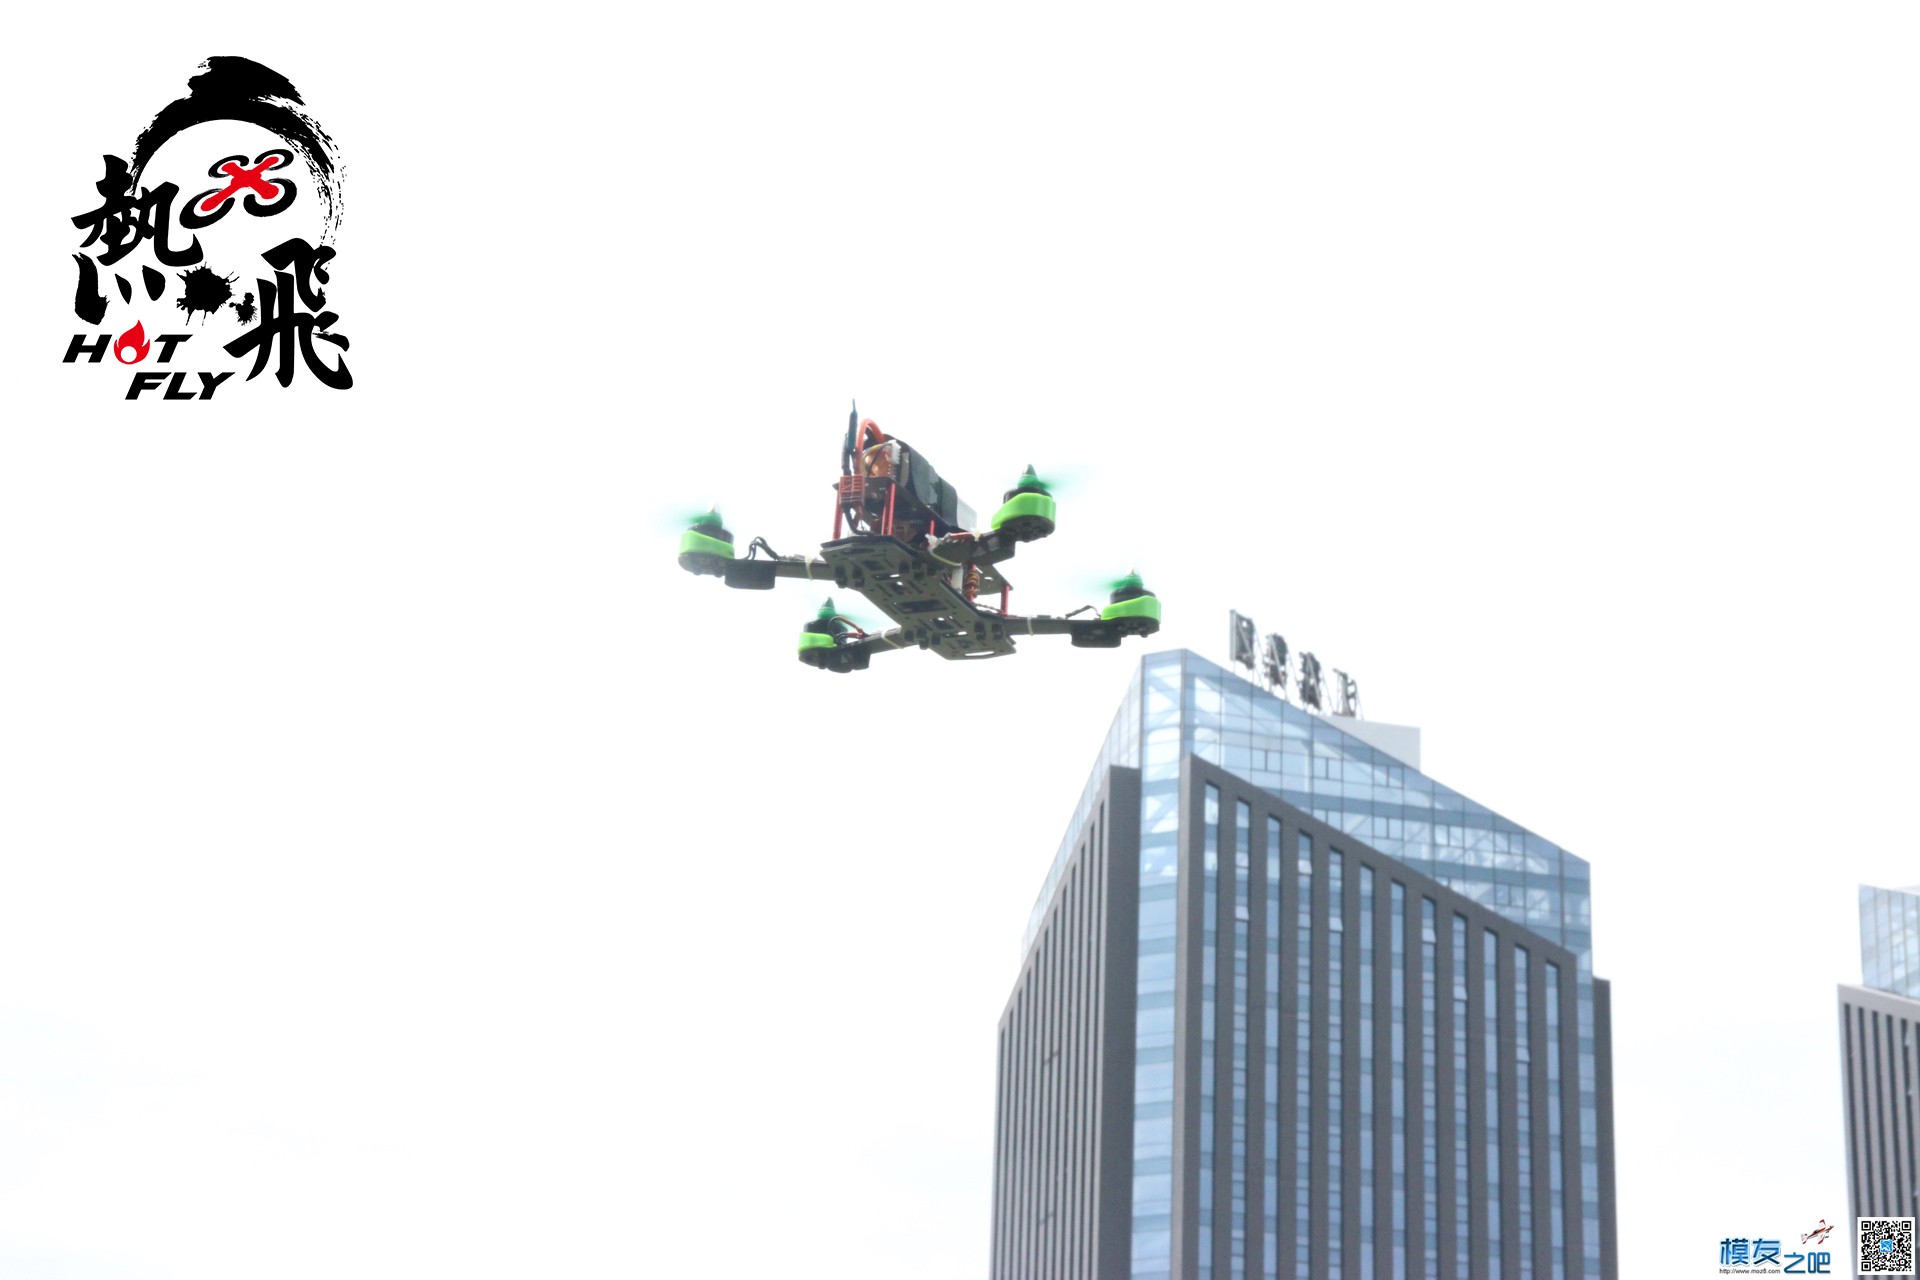 热飞视频+图片|7.9无人机总动员现场曝光各种最新机型 无人机 作者:杭州大碗 8107 